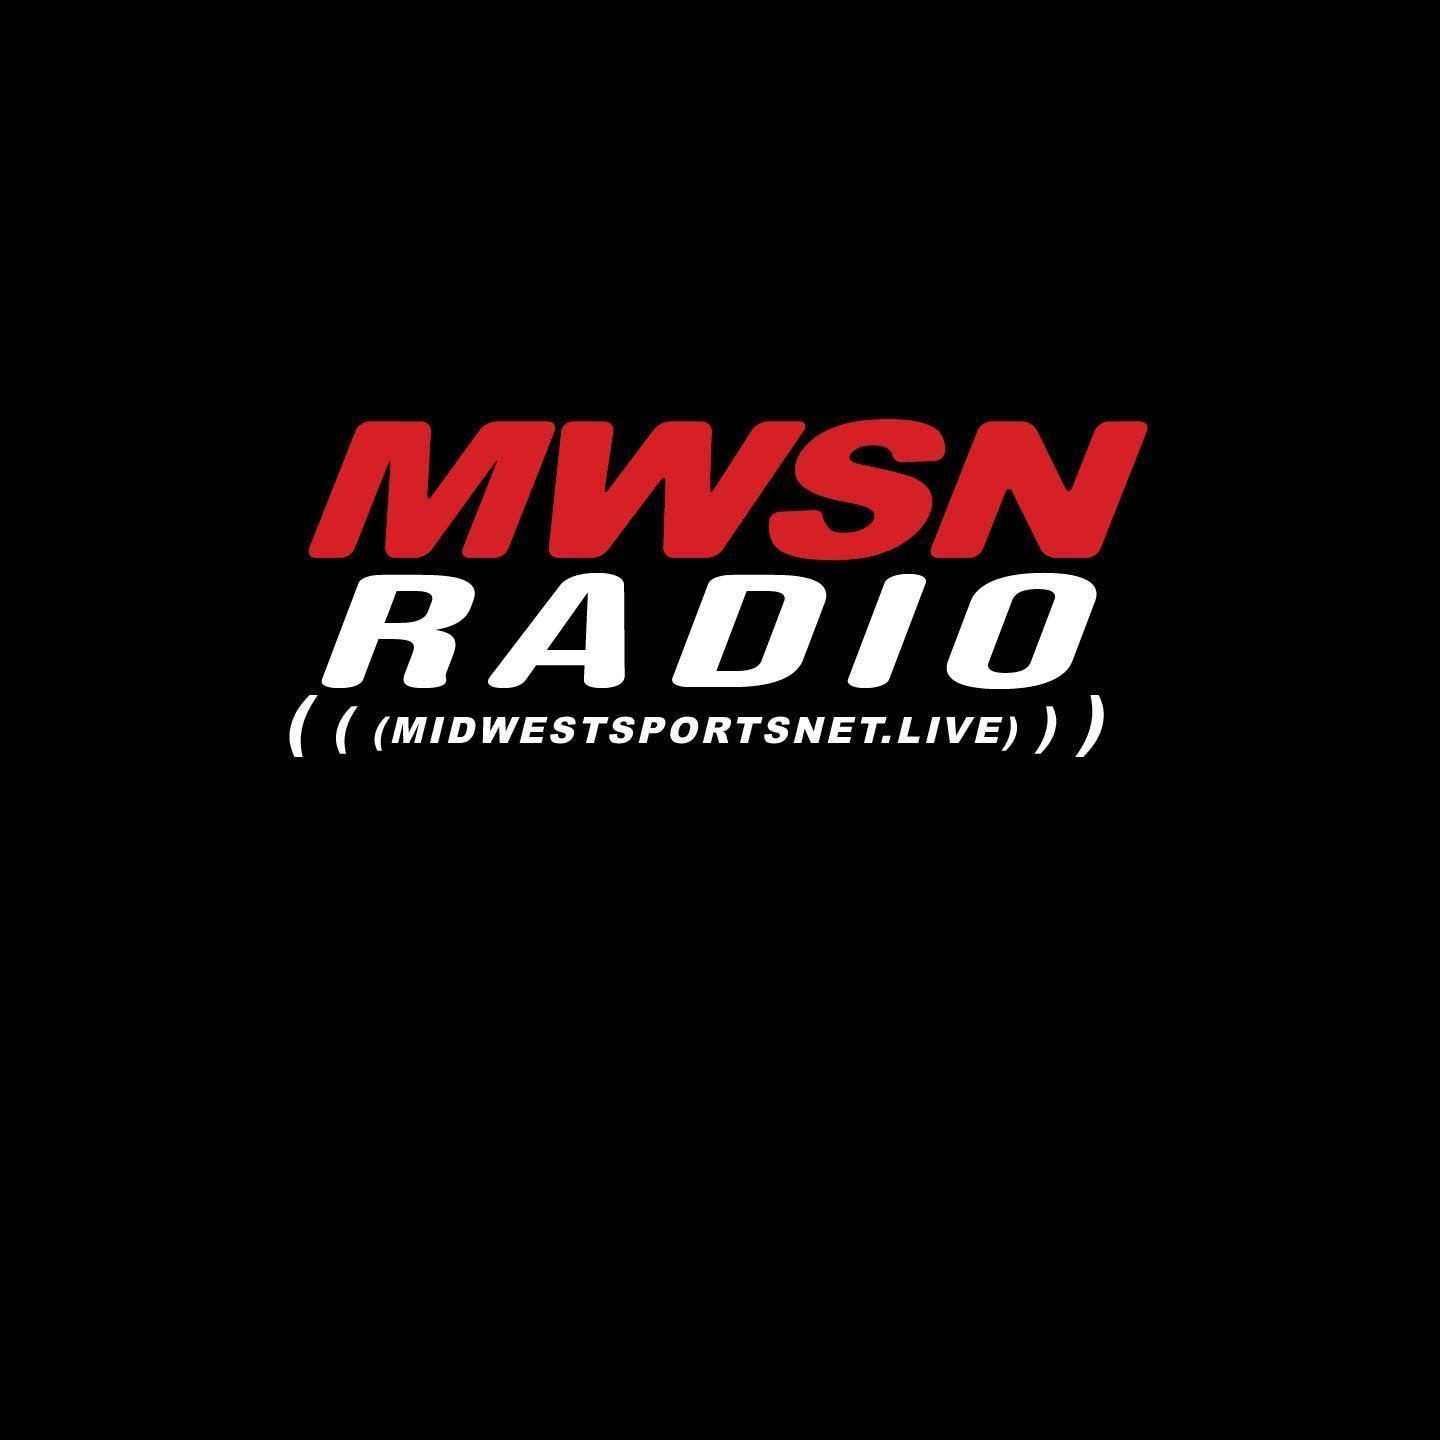 Profilo MWSN Radio Canale Tv